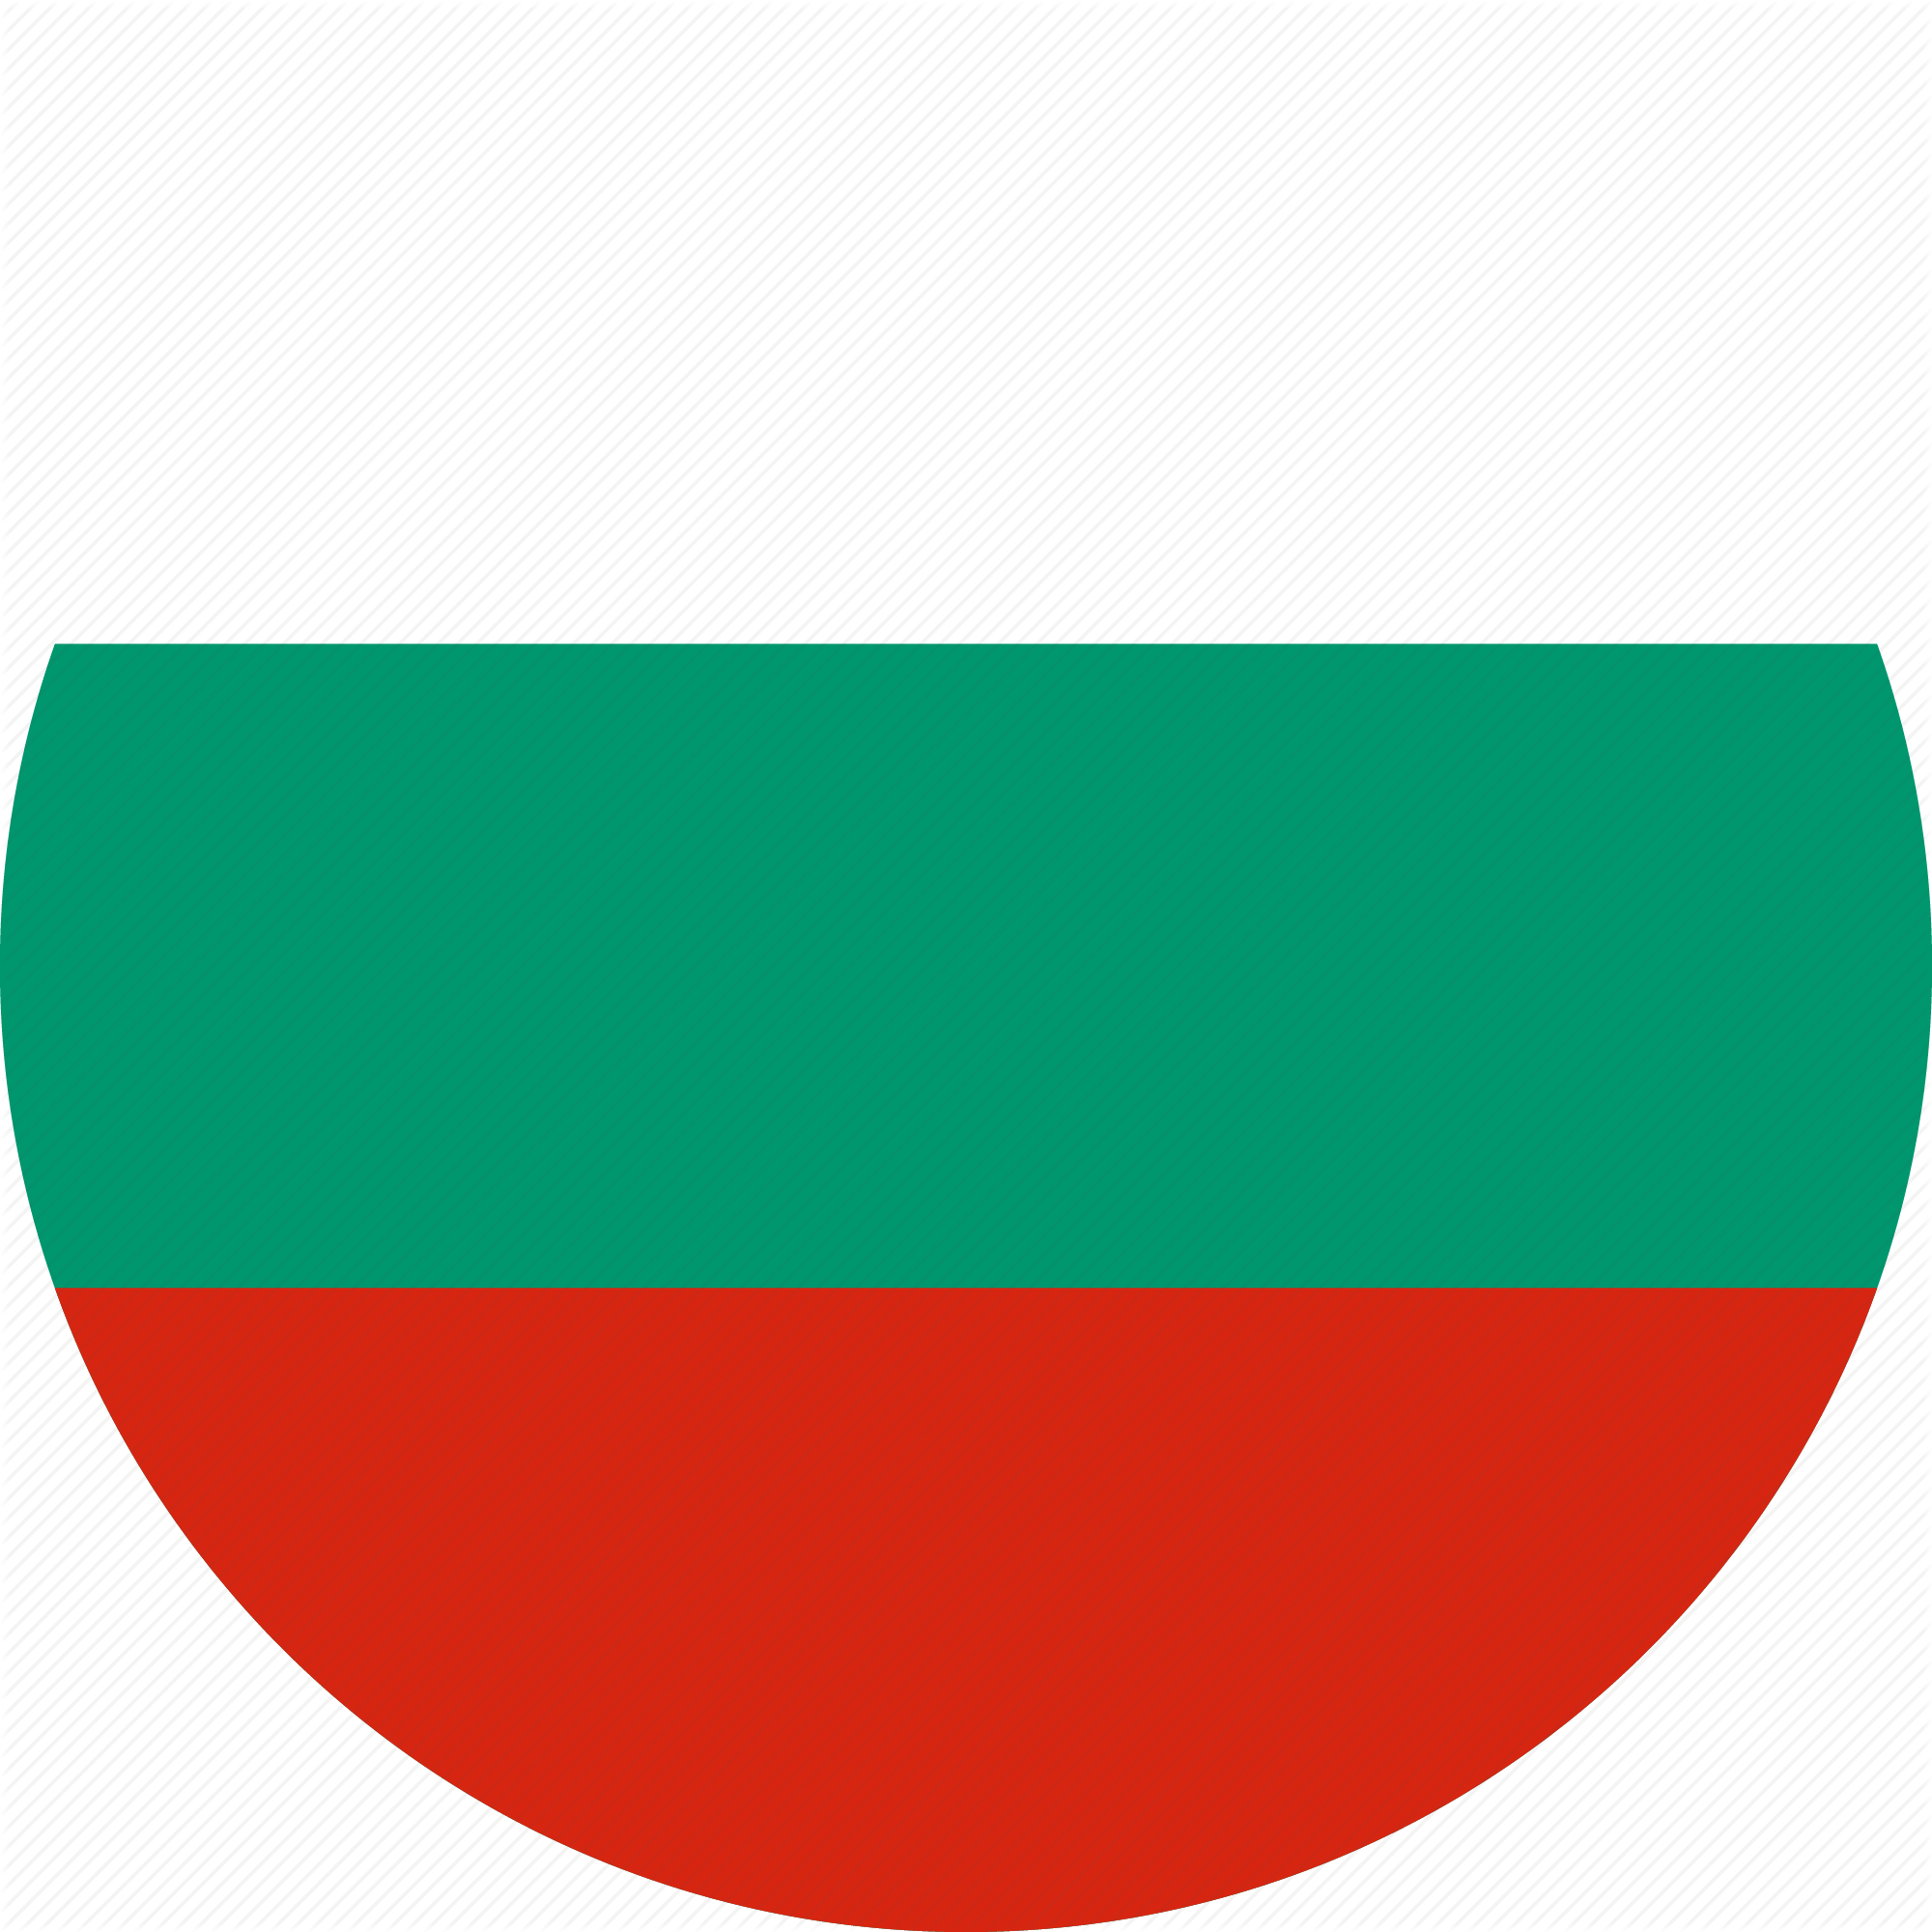 Bulharsky logo